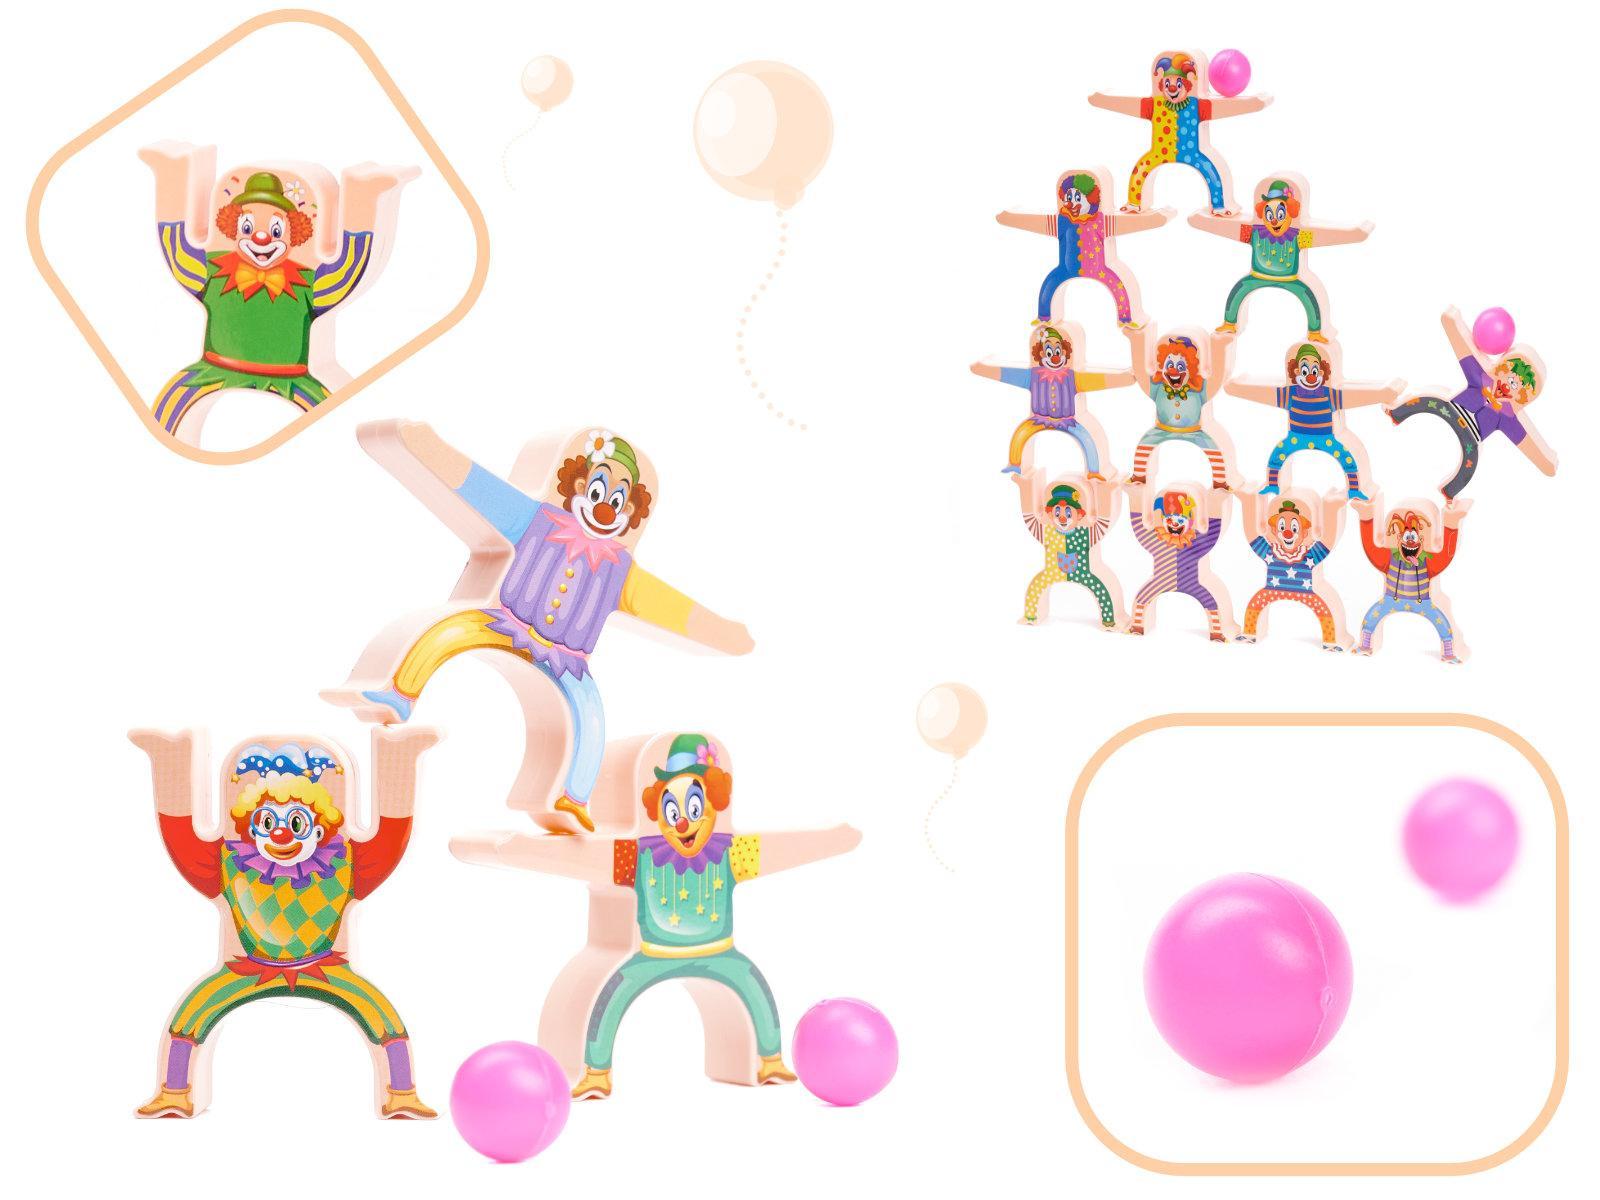 Gra zręcznościowa montessori układanka balansująca wieża klocki klaun 18 elementów dla dzieci 7x8,5x1,5 cm nr. 2